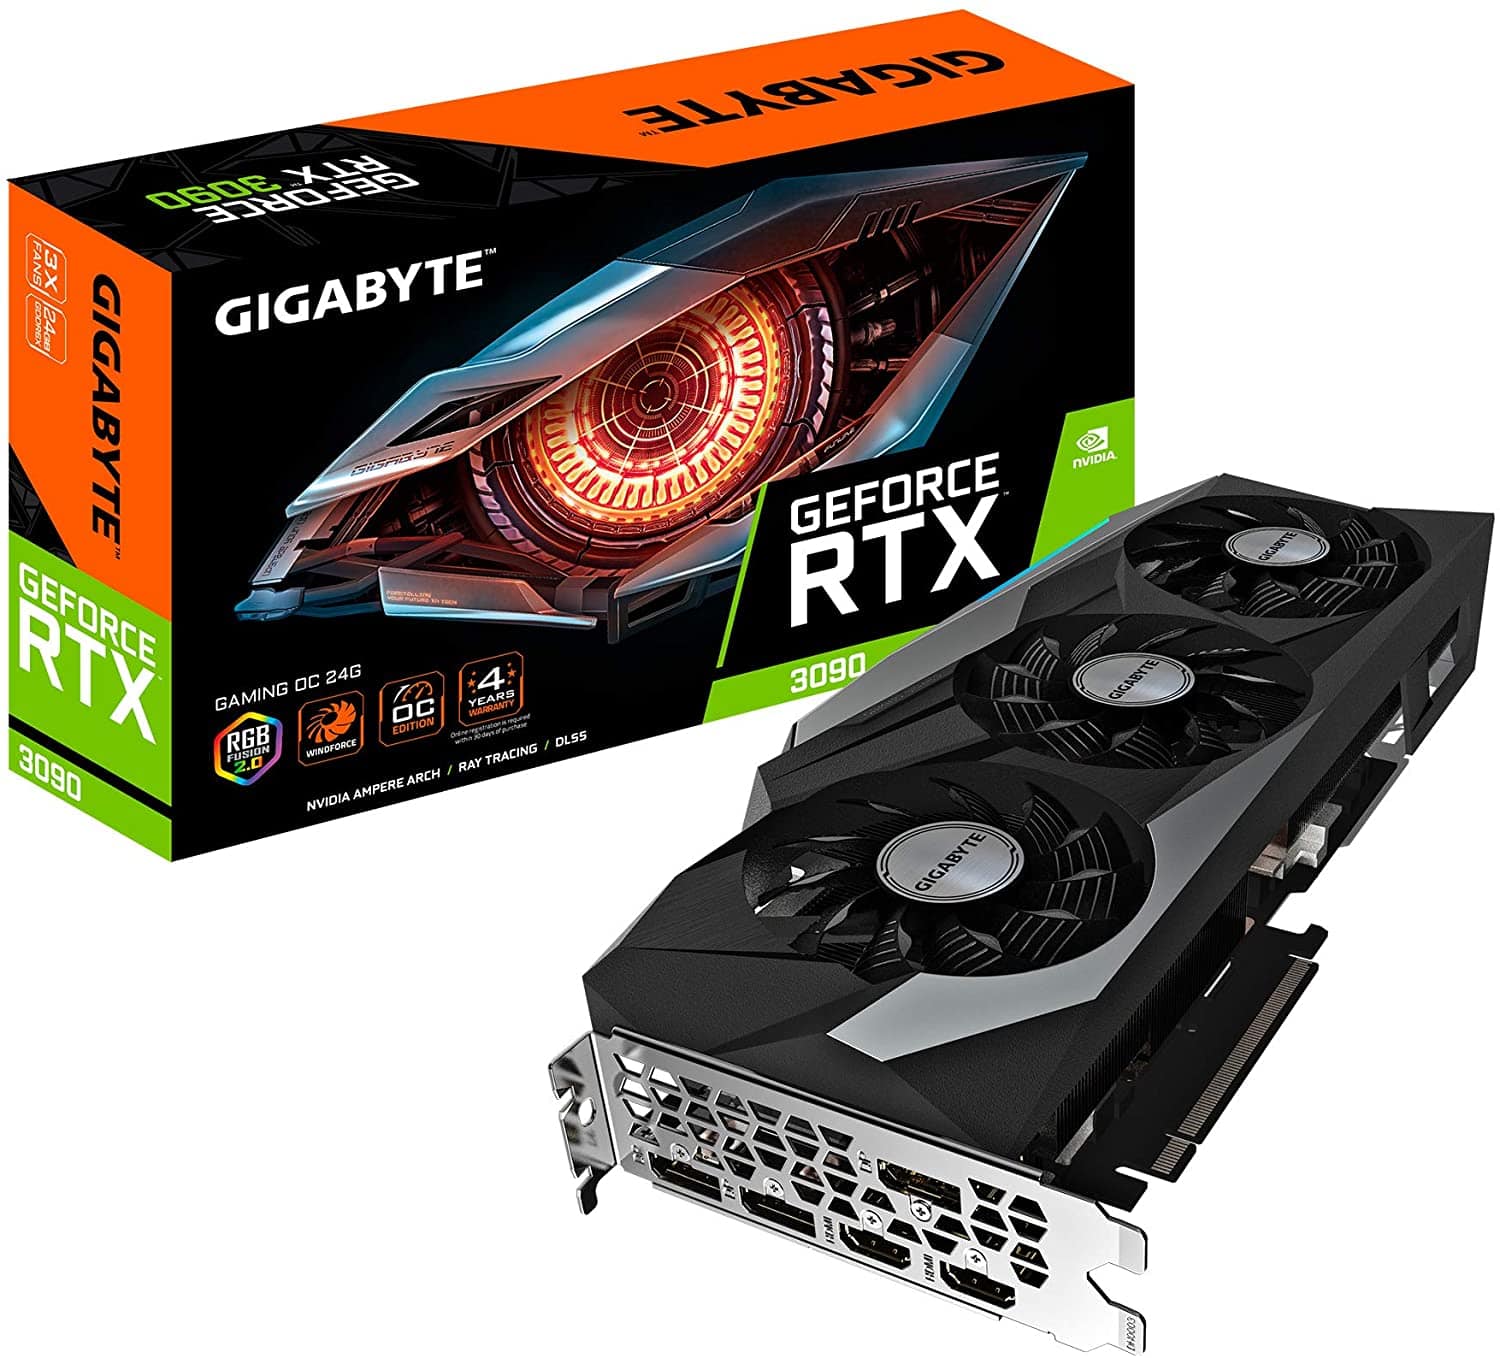 Gigabyte GeForce RTX 3090 Gaming OC